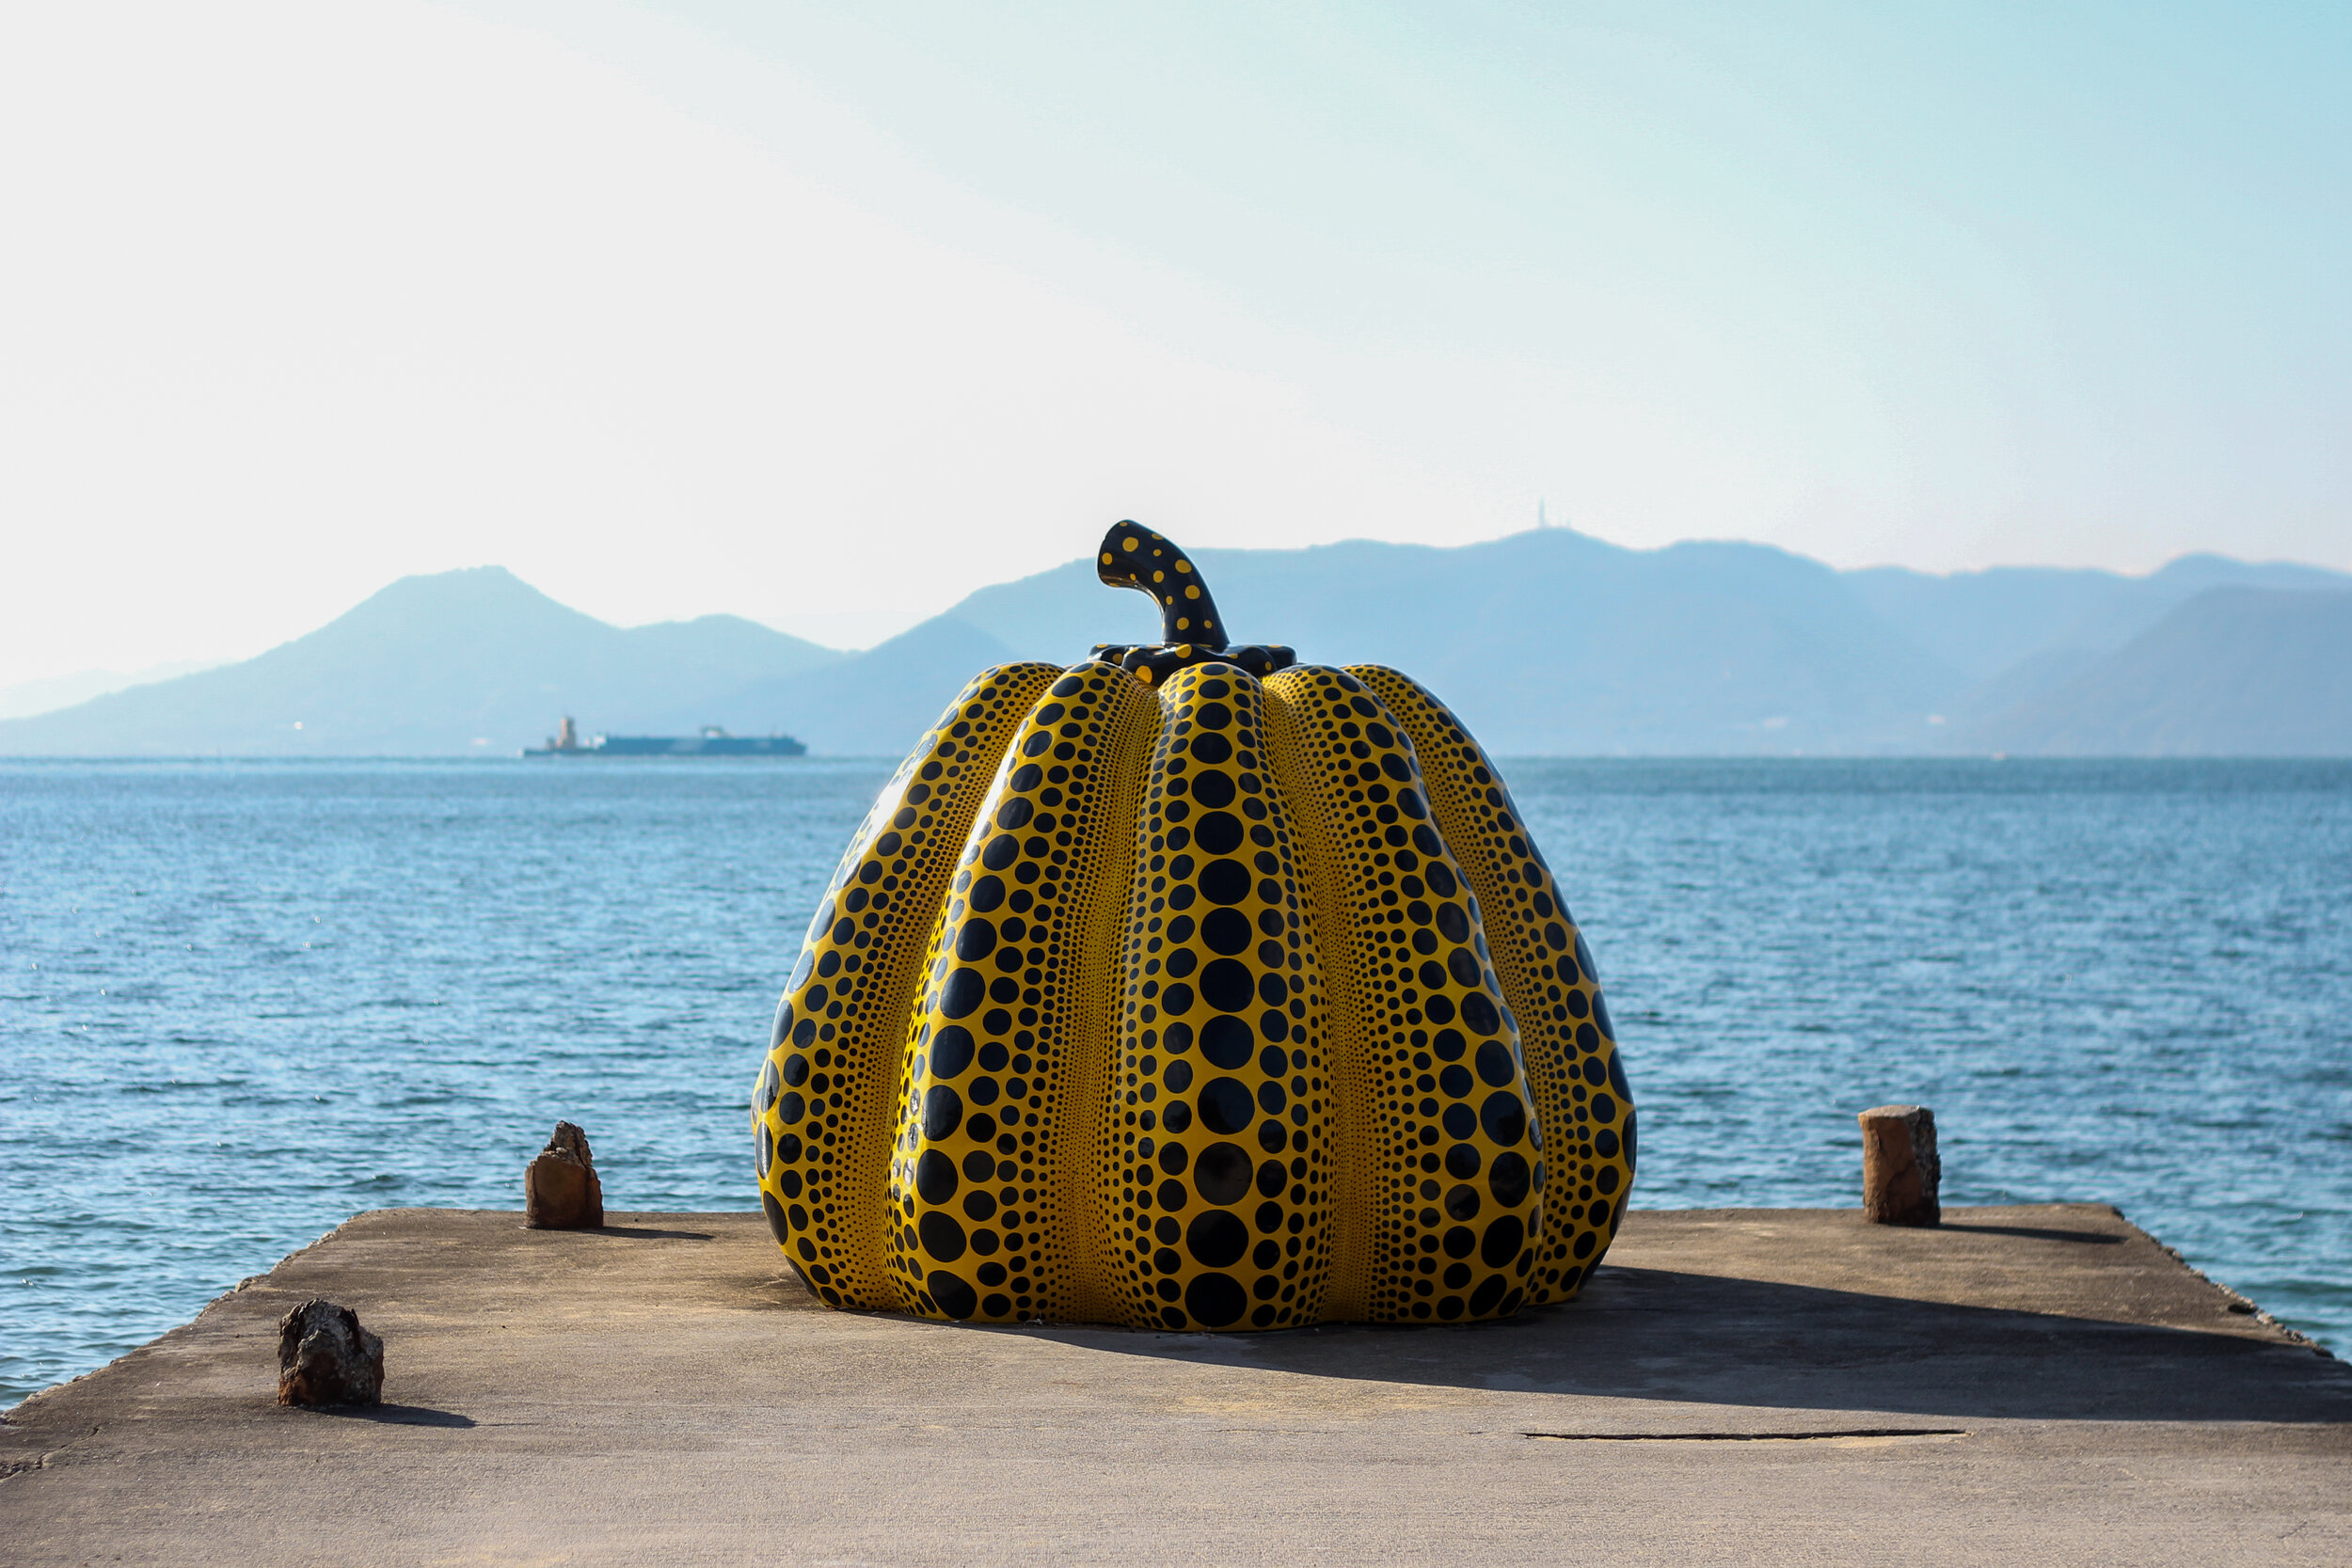 Yayoi Kusama's 'Pumpkin' artwork on Naoshima Island, Japan, in